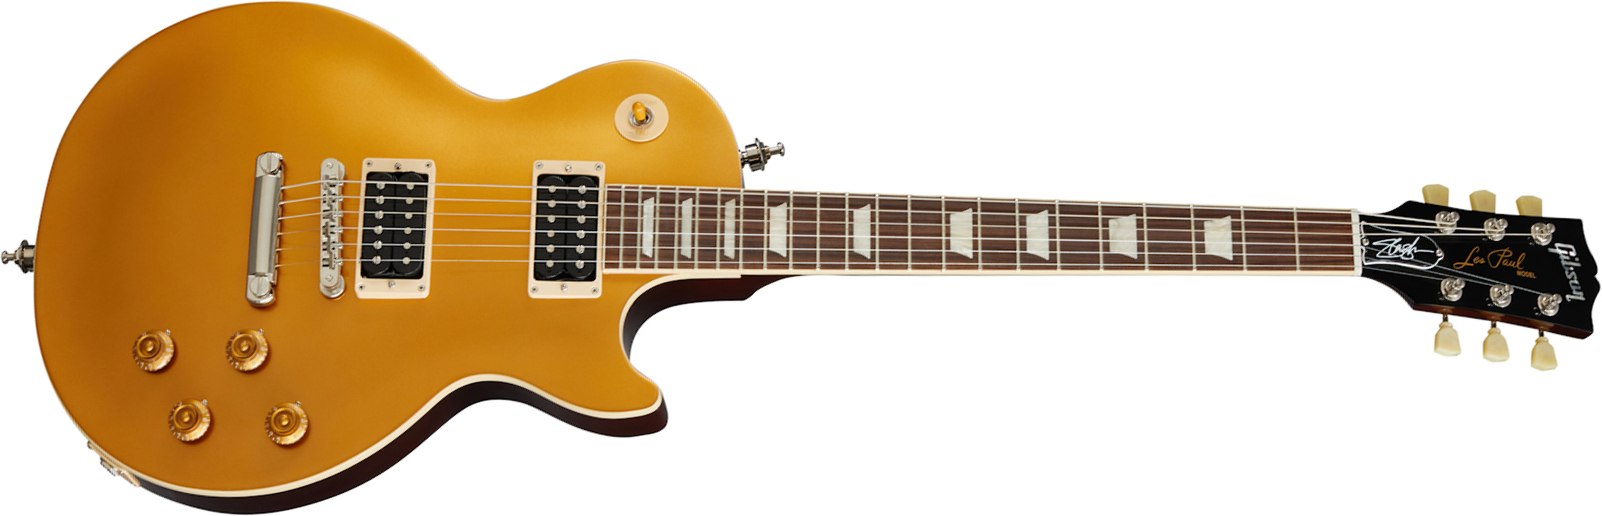 Gibson Slash Les Paul Standard Goldtop Victoria Signature 2h Ht Rw - Gold - Guitarra eléctrica de corte único. - Main picture